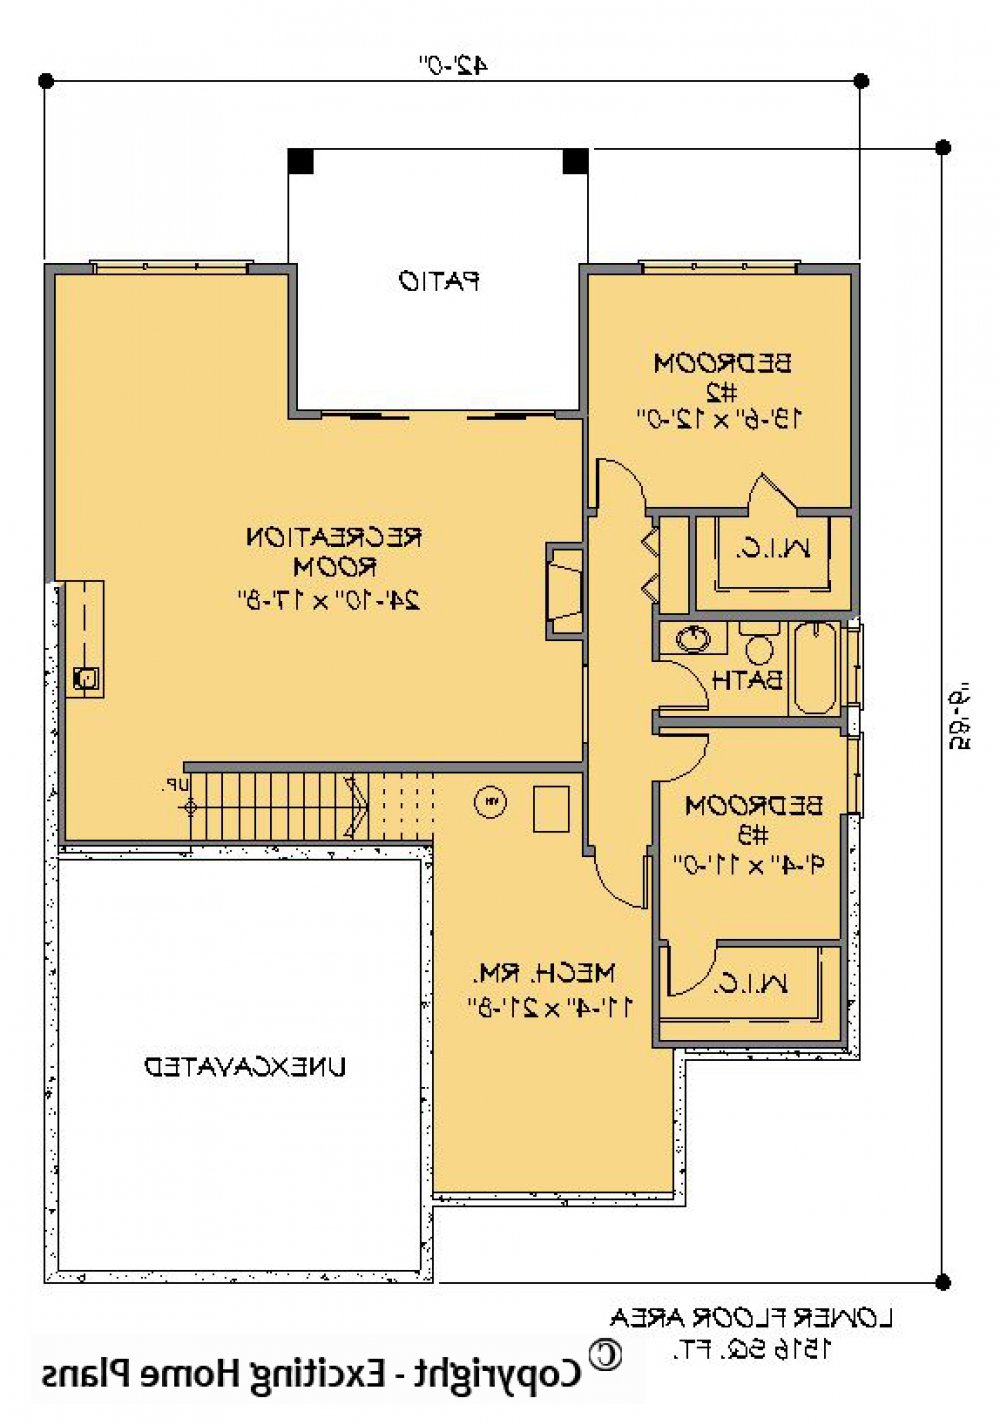 House Plan E1200-10 Lower Floor Plan REVERSE